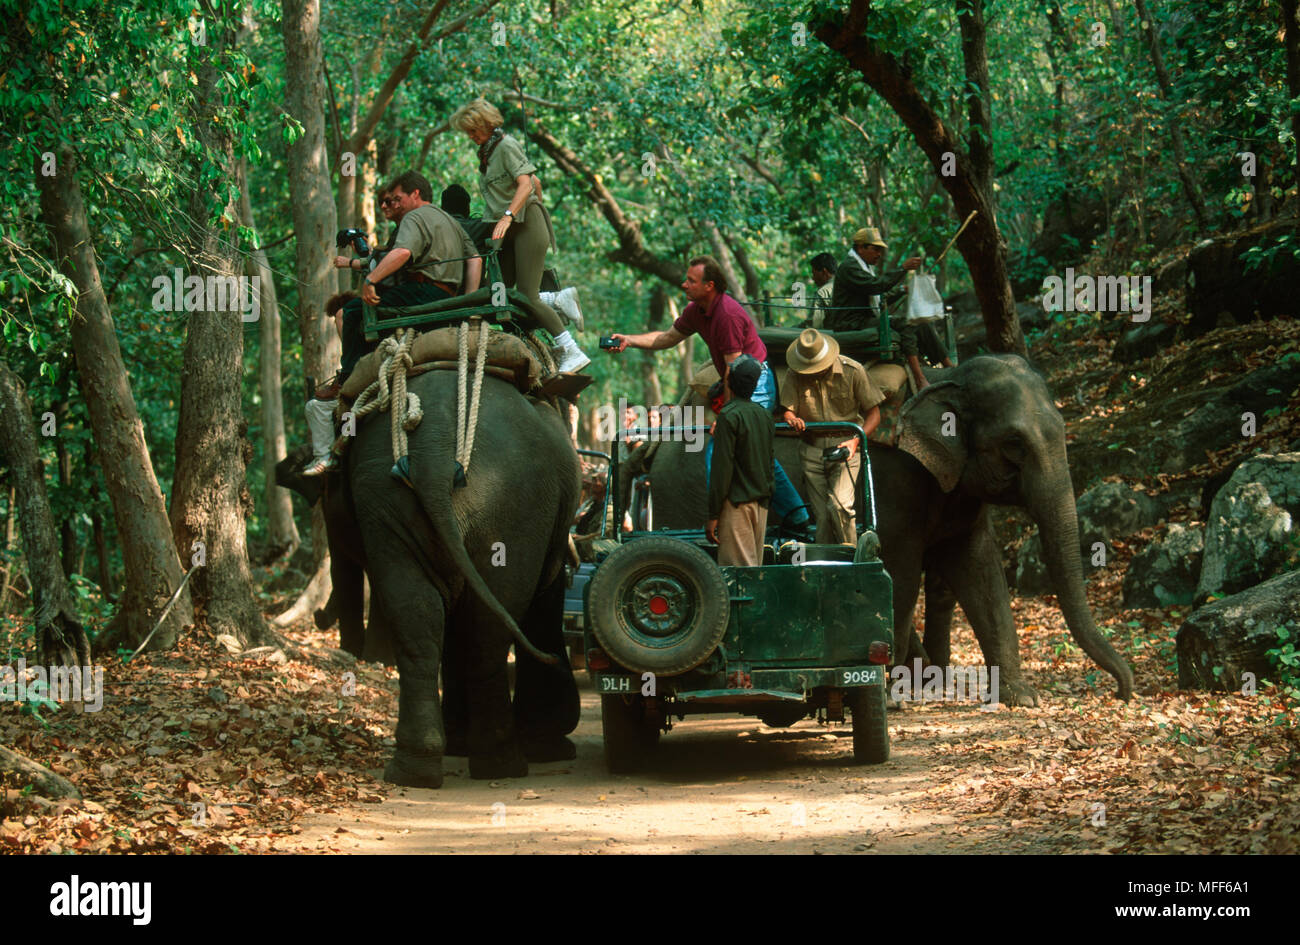 Touristen mit Ein/Aus-Schalter Fahrzeug Elefant Tiger beobachten zu klettern. Bandhavgarth National Park. Indien Stockfoto